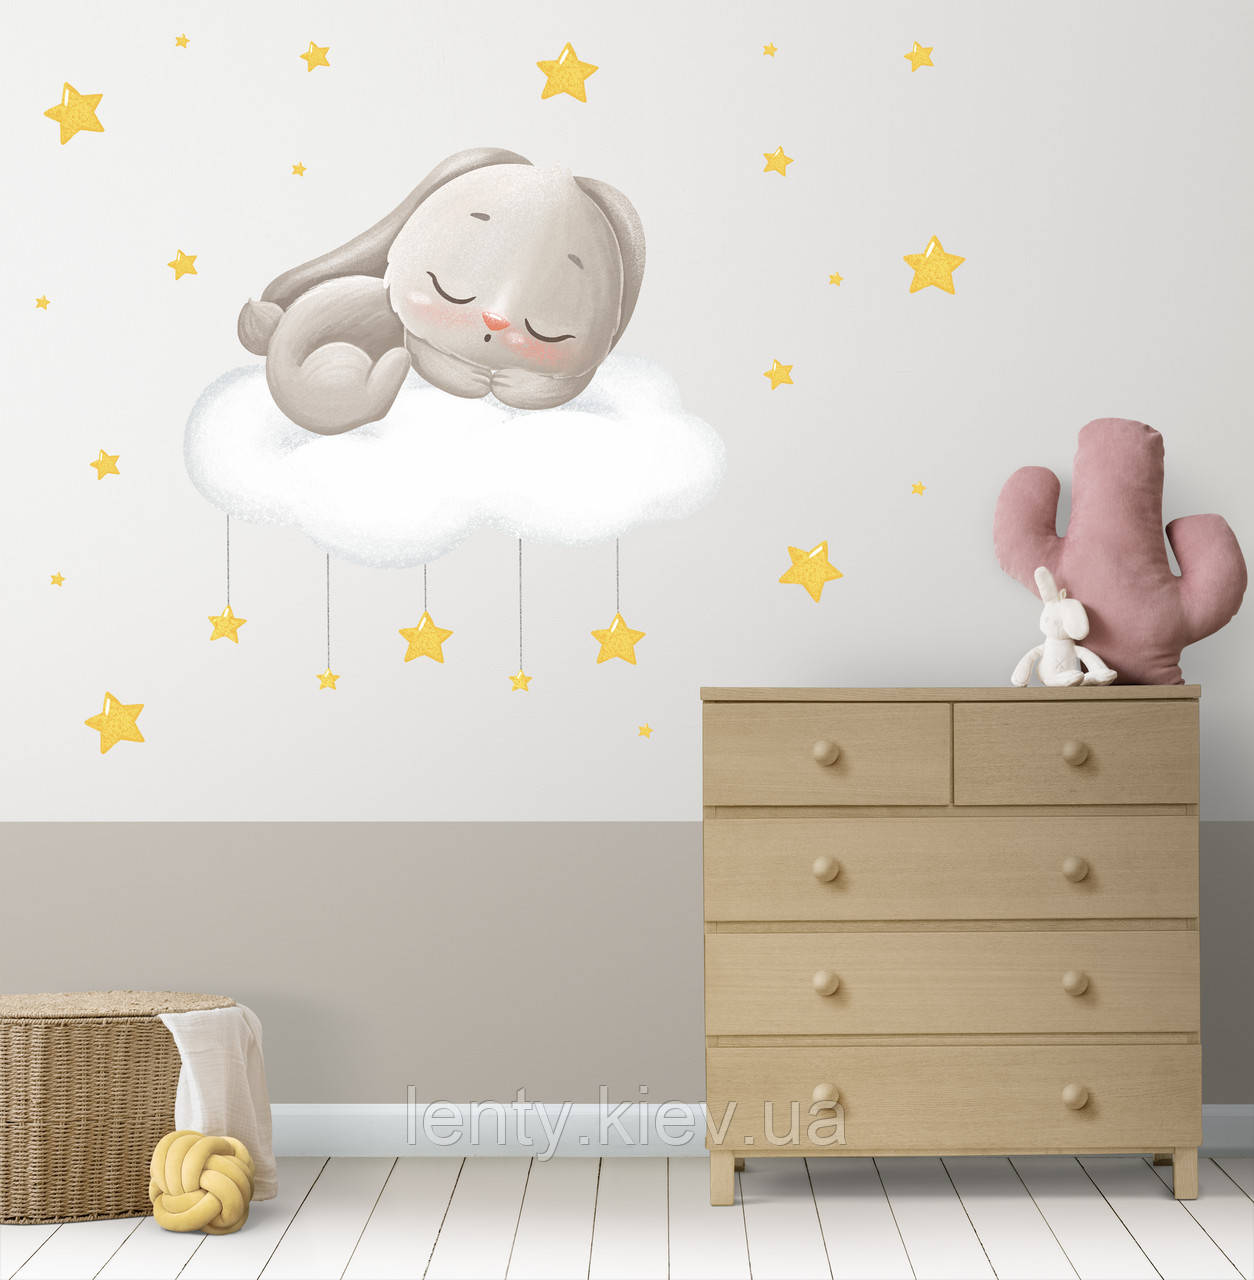 Інтер'єрна наклейка "Спляче зайченя на хмаринці" 80х80 см + набір зірочок на стіну в дитячу кімнату